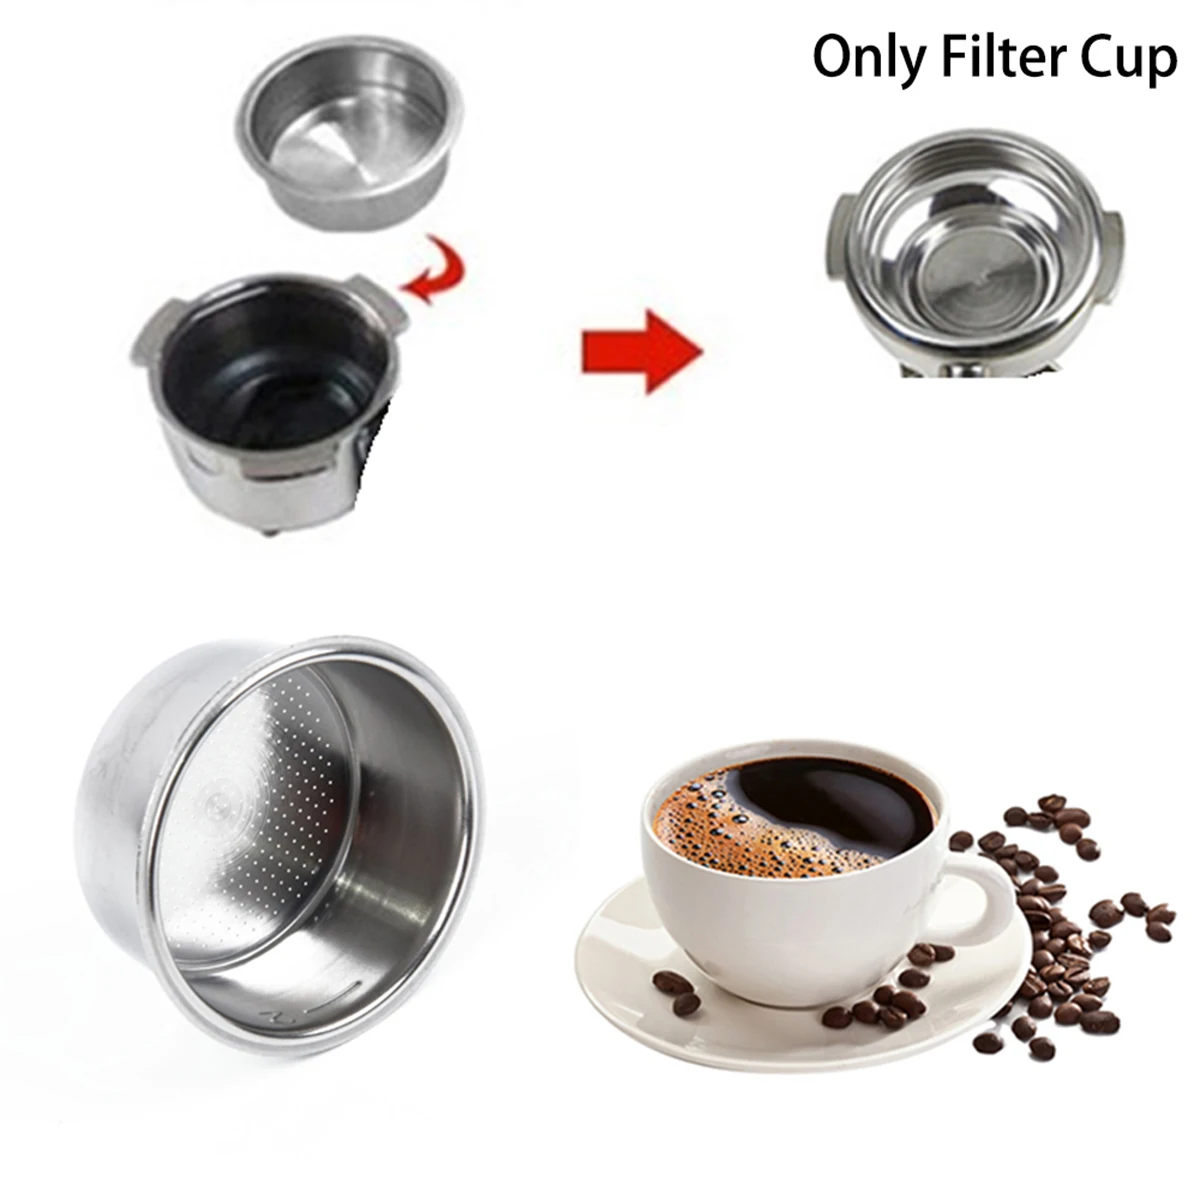 Чашка для фильтра для кофе 51 мм, корзина для фильтра без давления для Delonghi Filter Krups, аксессуары для кофе, инструменты для бариста